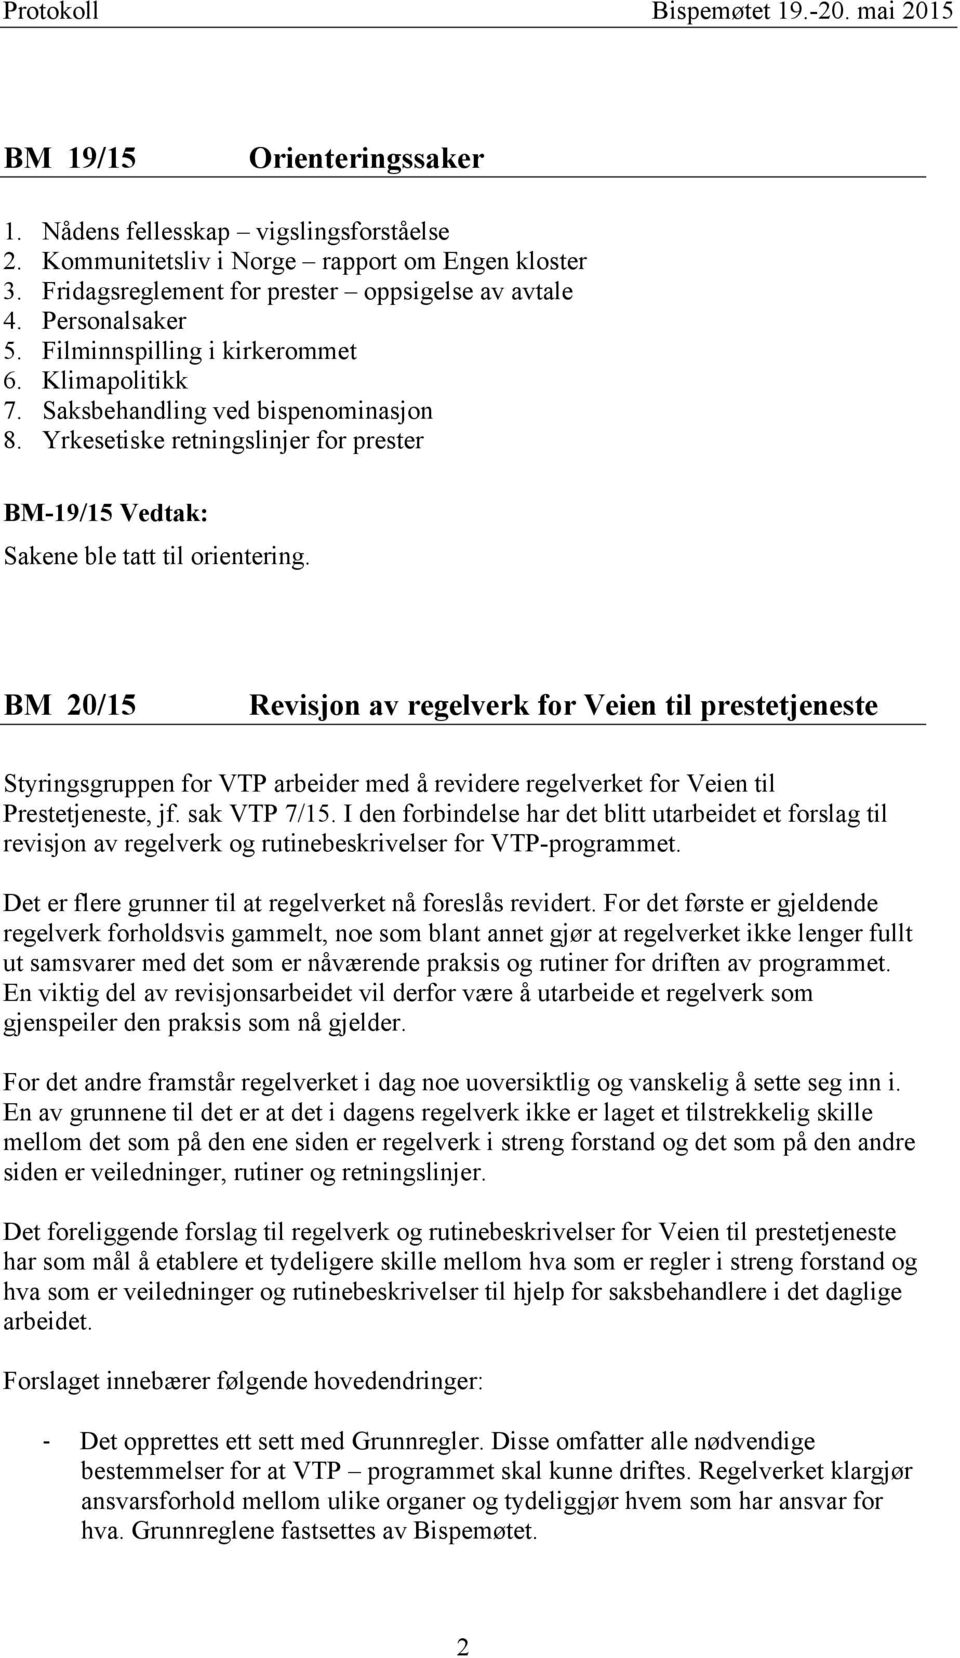 BM 20/15 Revisjon av regelverk for Veien til prestetjeneste Styringsgruppen for VTP arbeider med å revidere regelverket for Veien til Prestetjeneste, jf. sak VTP 7/15.